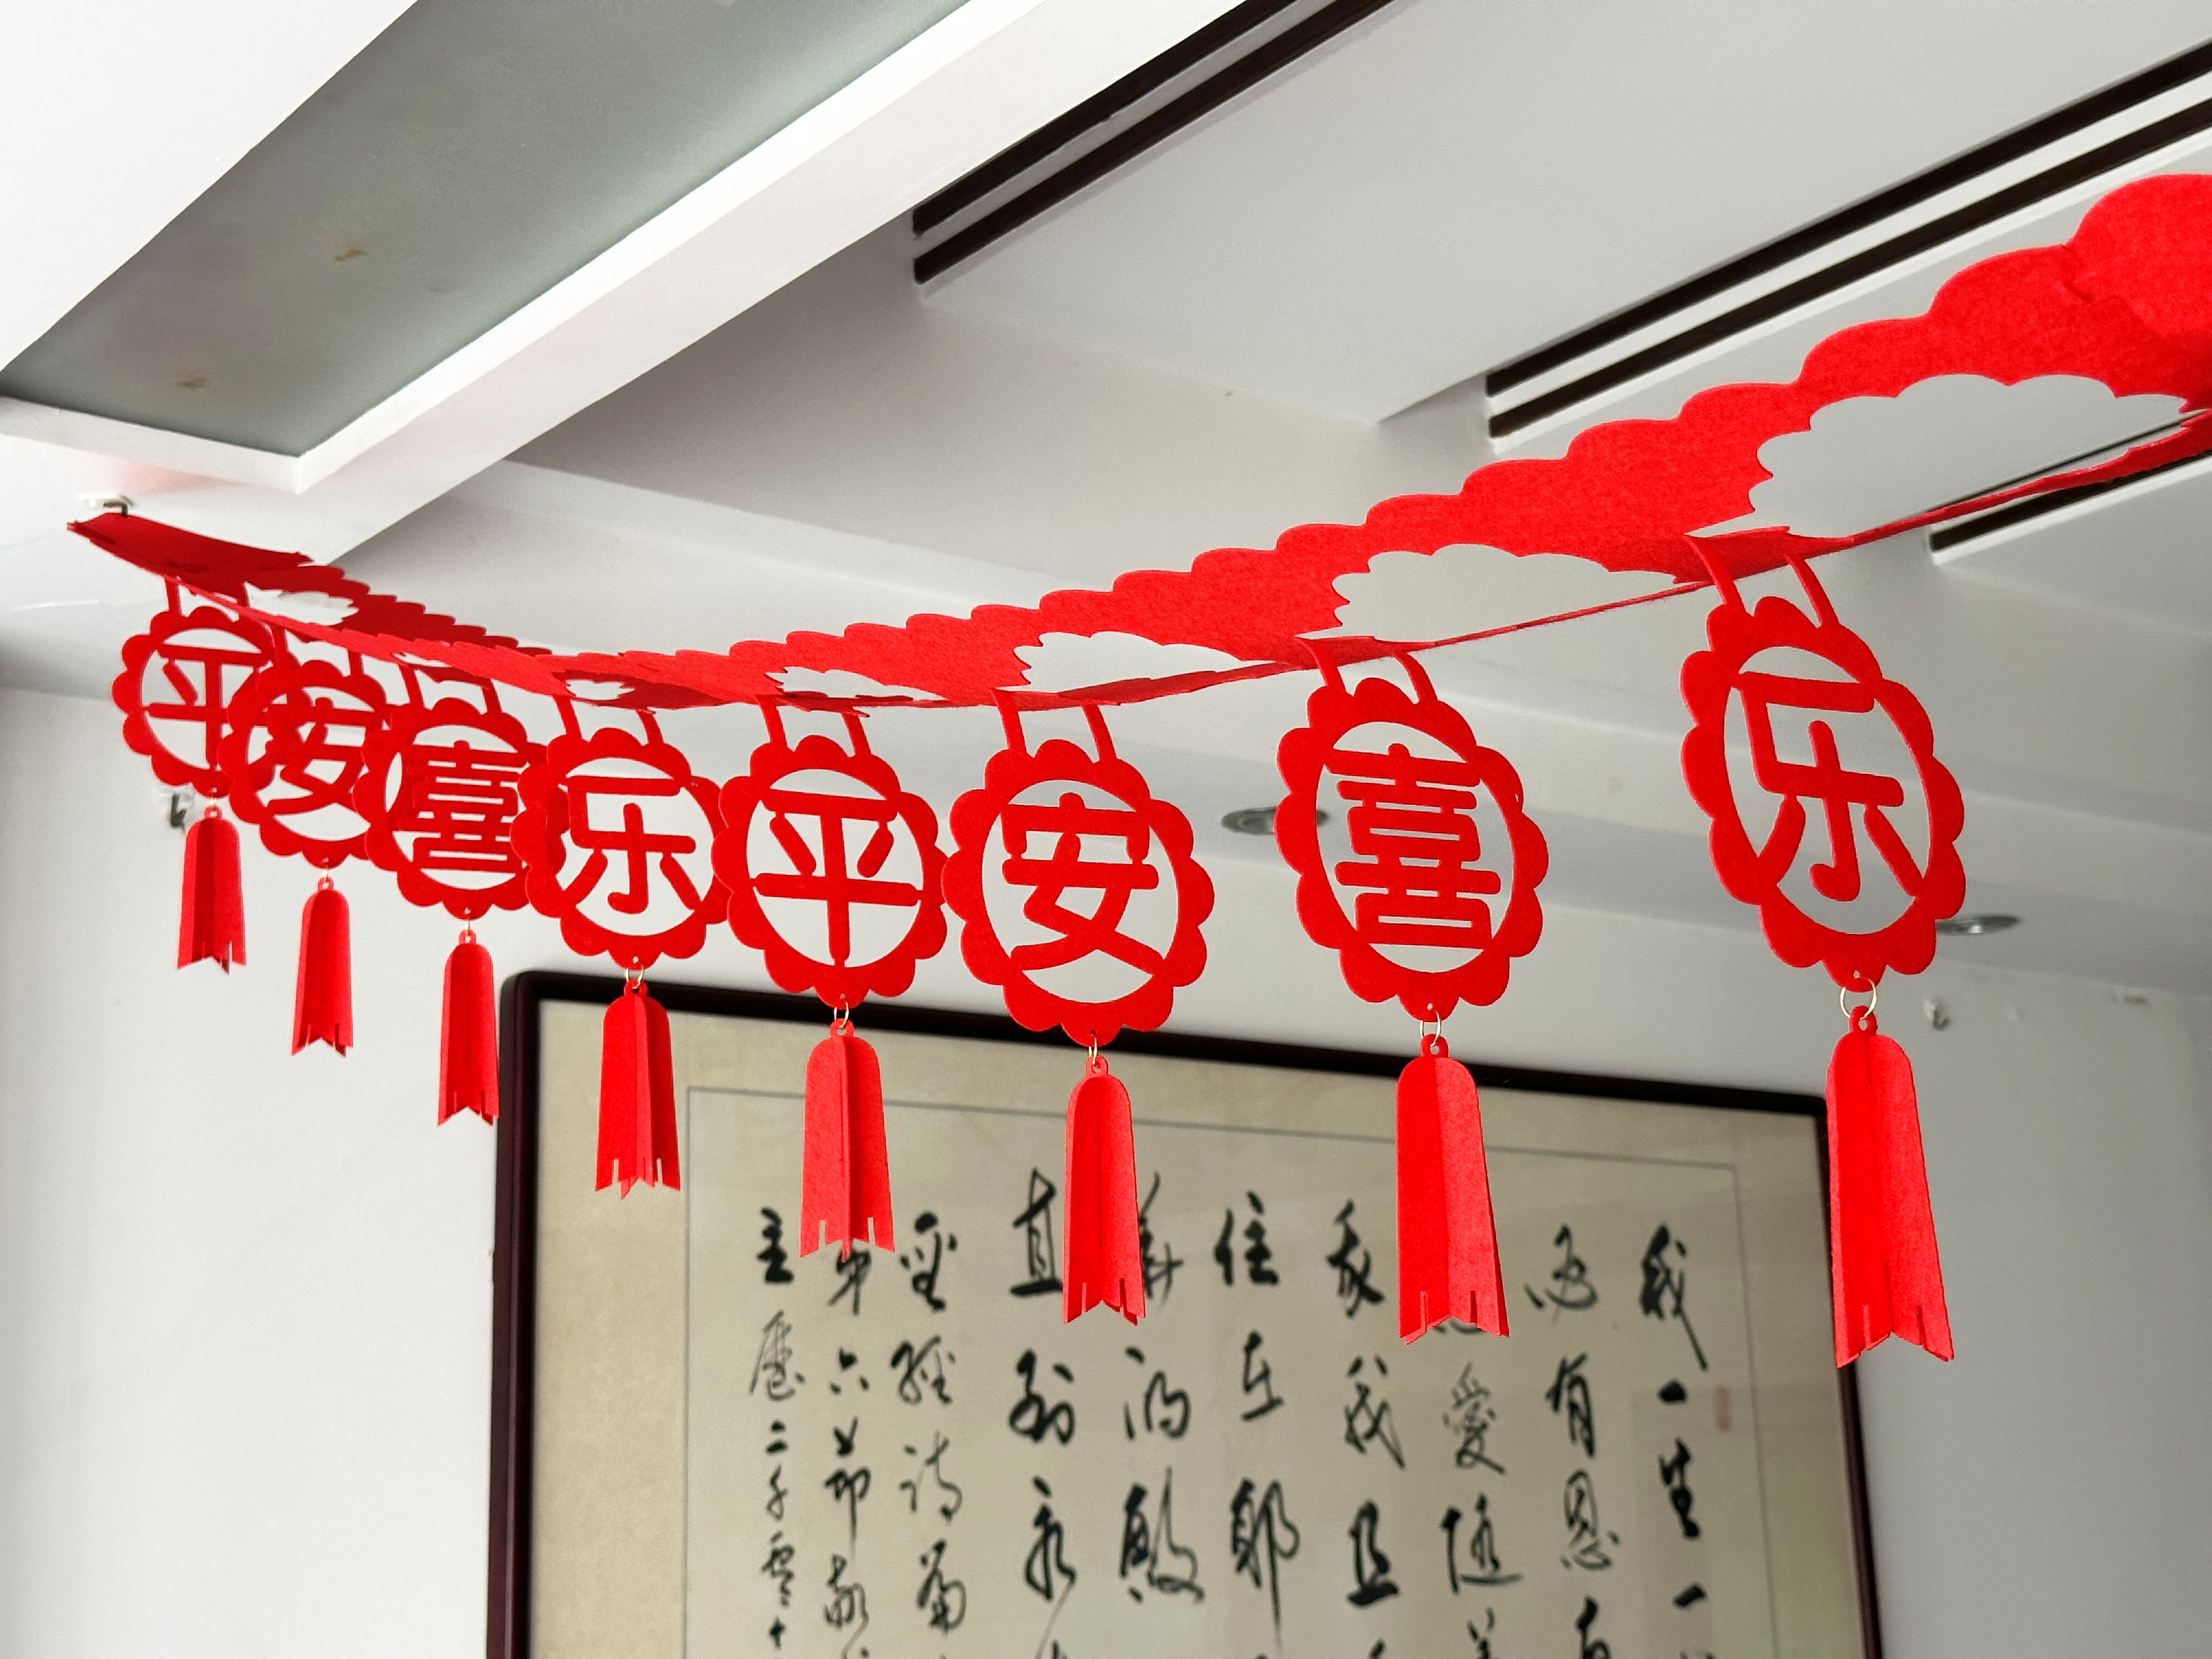 用品教舞台庆春挂件大红色节日节堂教会新年喜拉花圣诞天花板装饰怎么看?